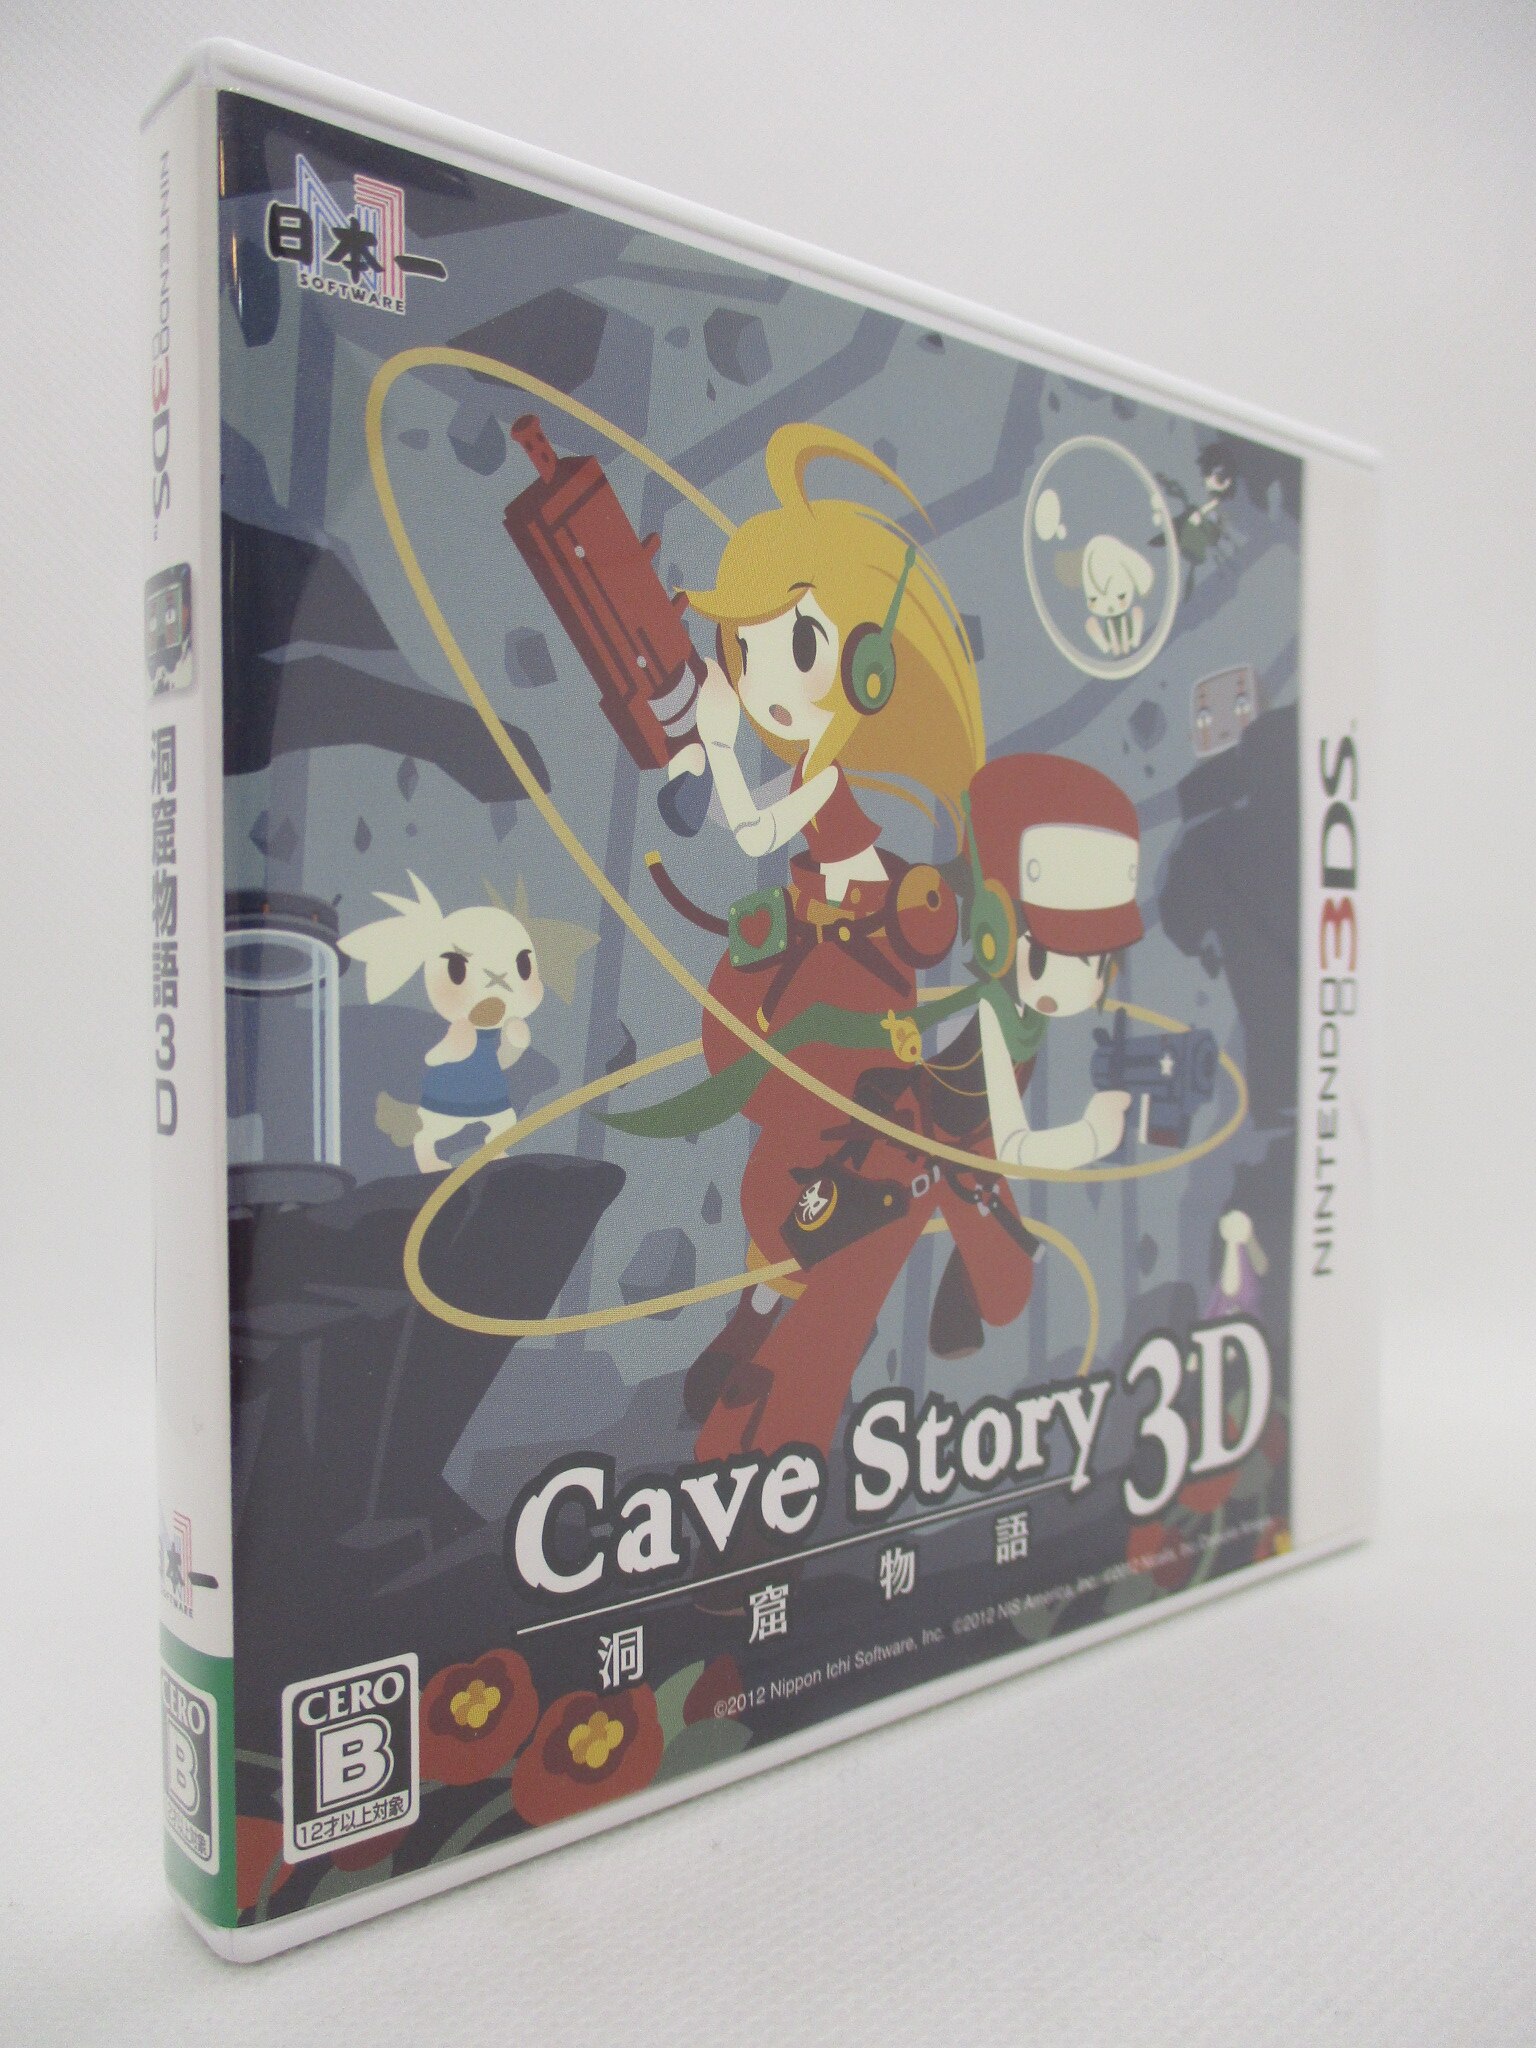 気質アップ】 洞窟物語3D Cave Story 日本一ソフトウェア Nintendo 3DS